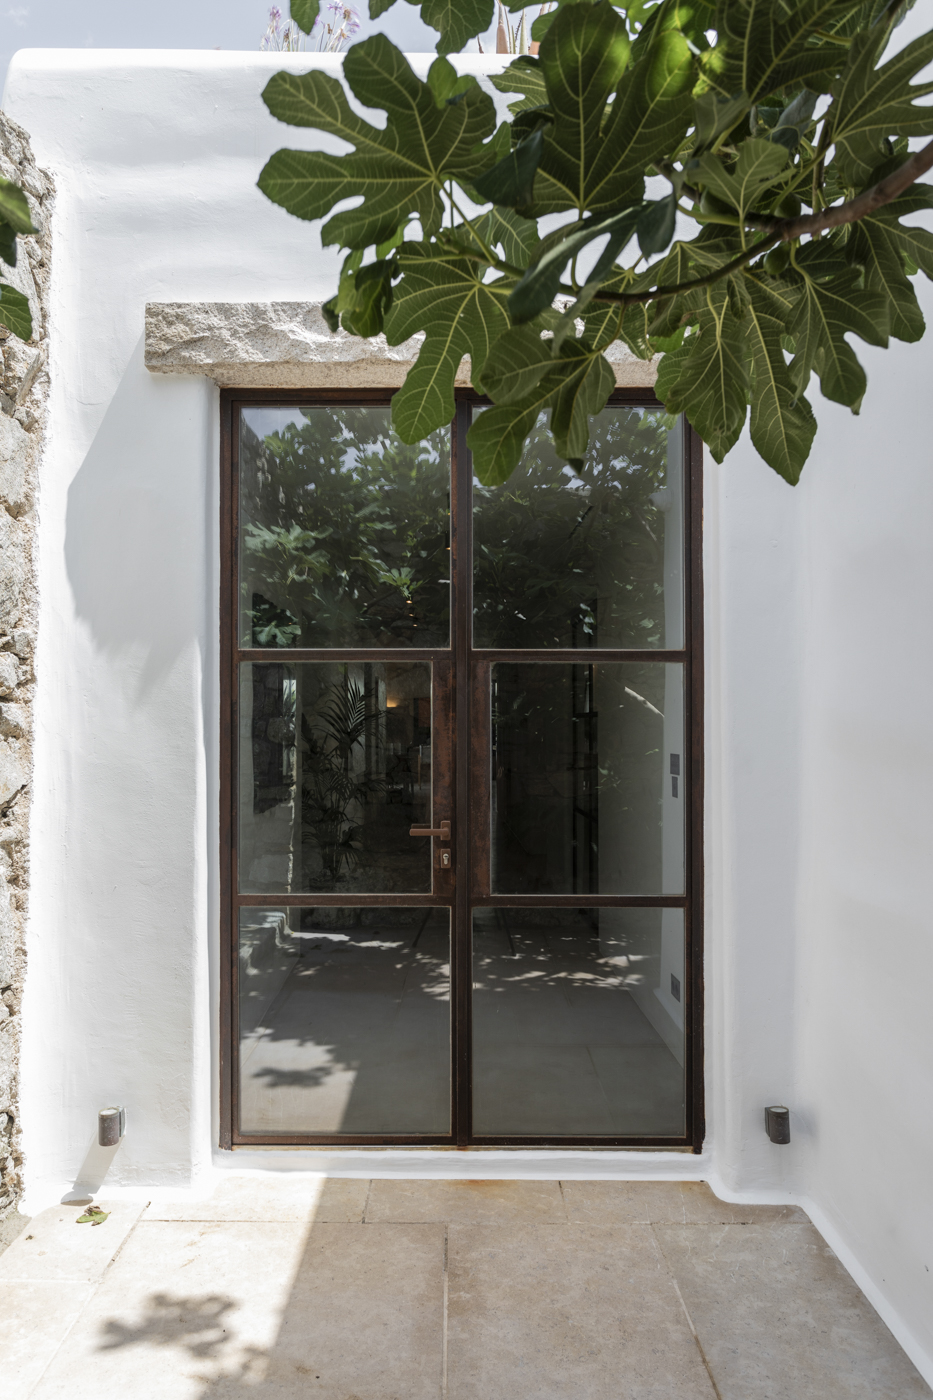 Archisearch GRAIL AWARDS 2024: 14 Βραβεία και 25 Έπαινοι στην πρώτη διοργάνωση των Ελληνικών Βραβείων Αρχιτεκτονικής, Εσωτερικών Χώρων και Φωτισμού